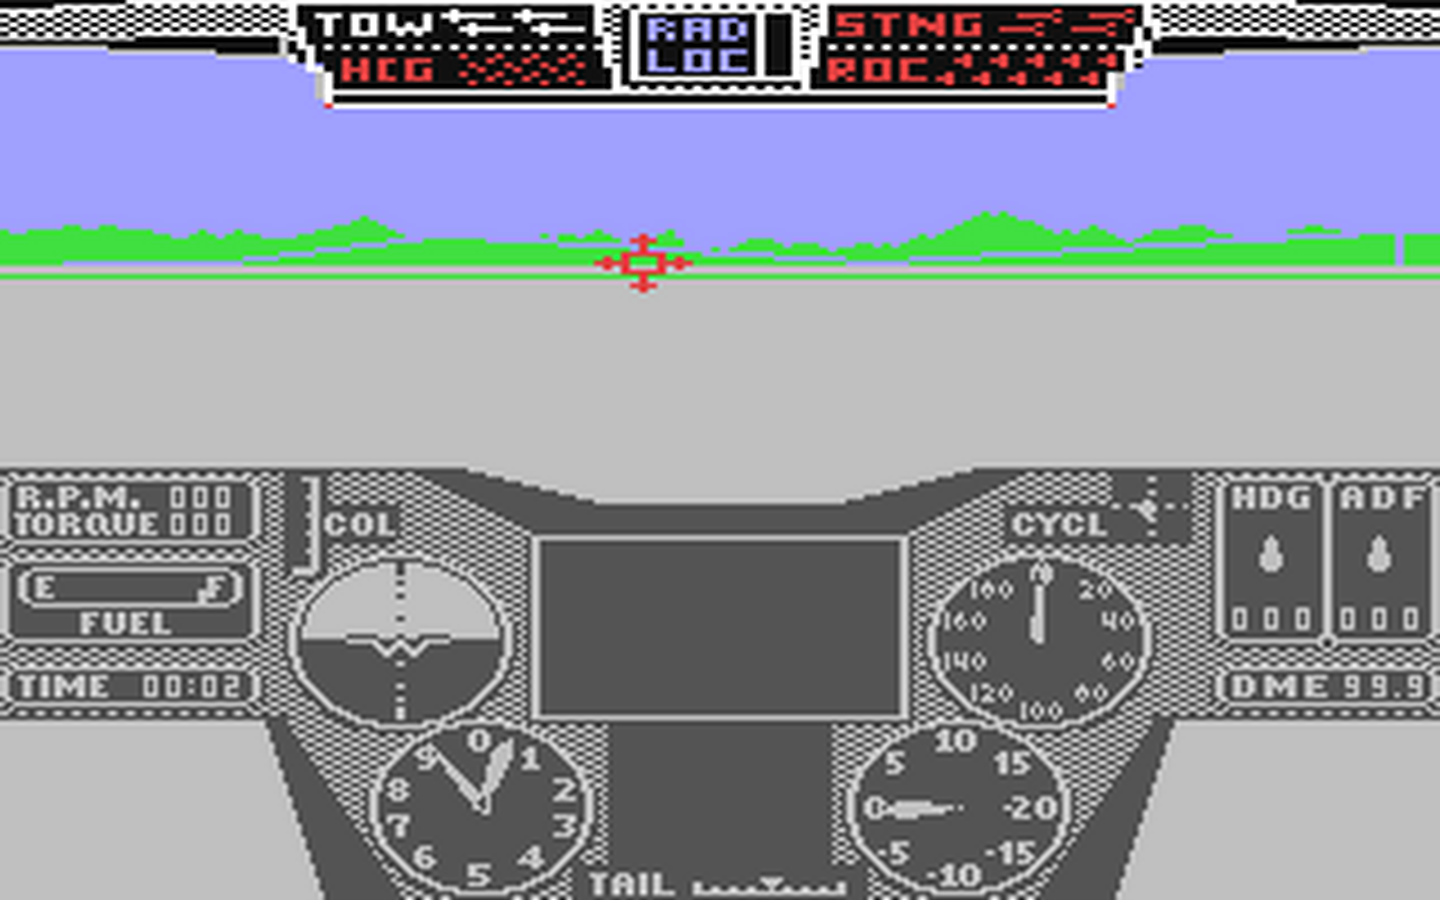 C64 GameBase Thunderchopper ActionSoft 1986